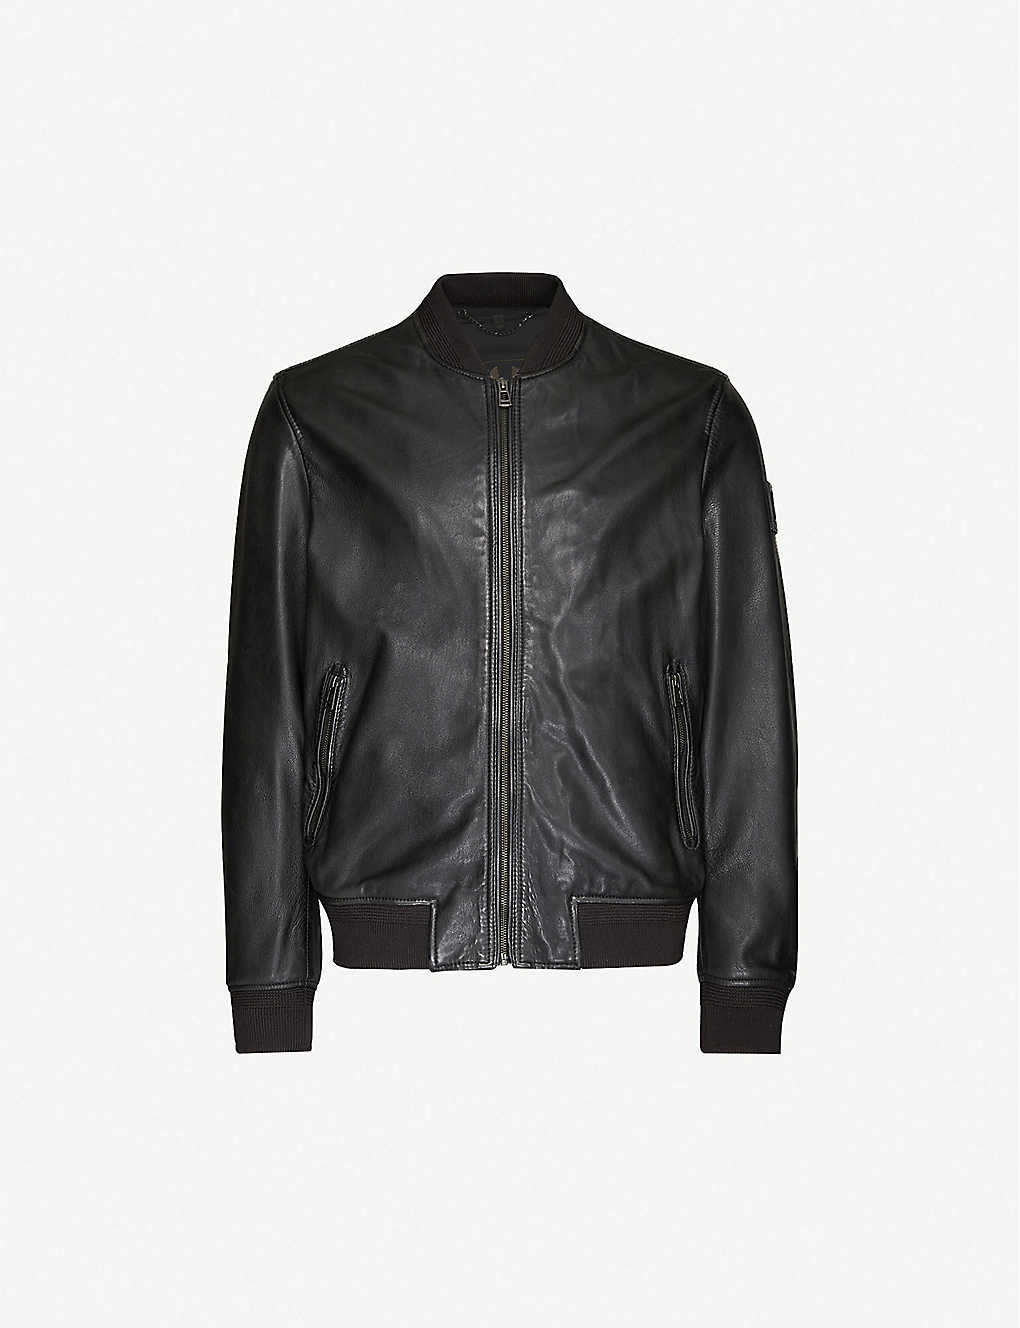 BELSTAFF - Slim-fit leather bomber jacket | Selfridges.com